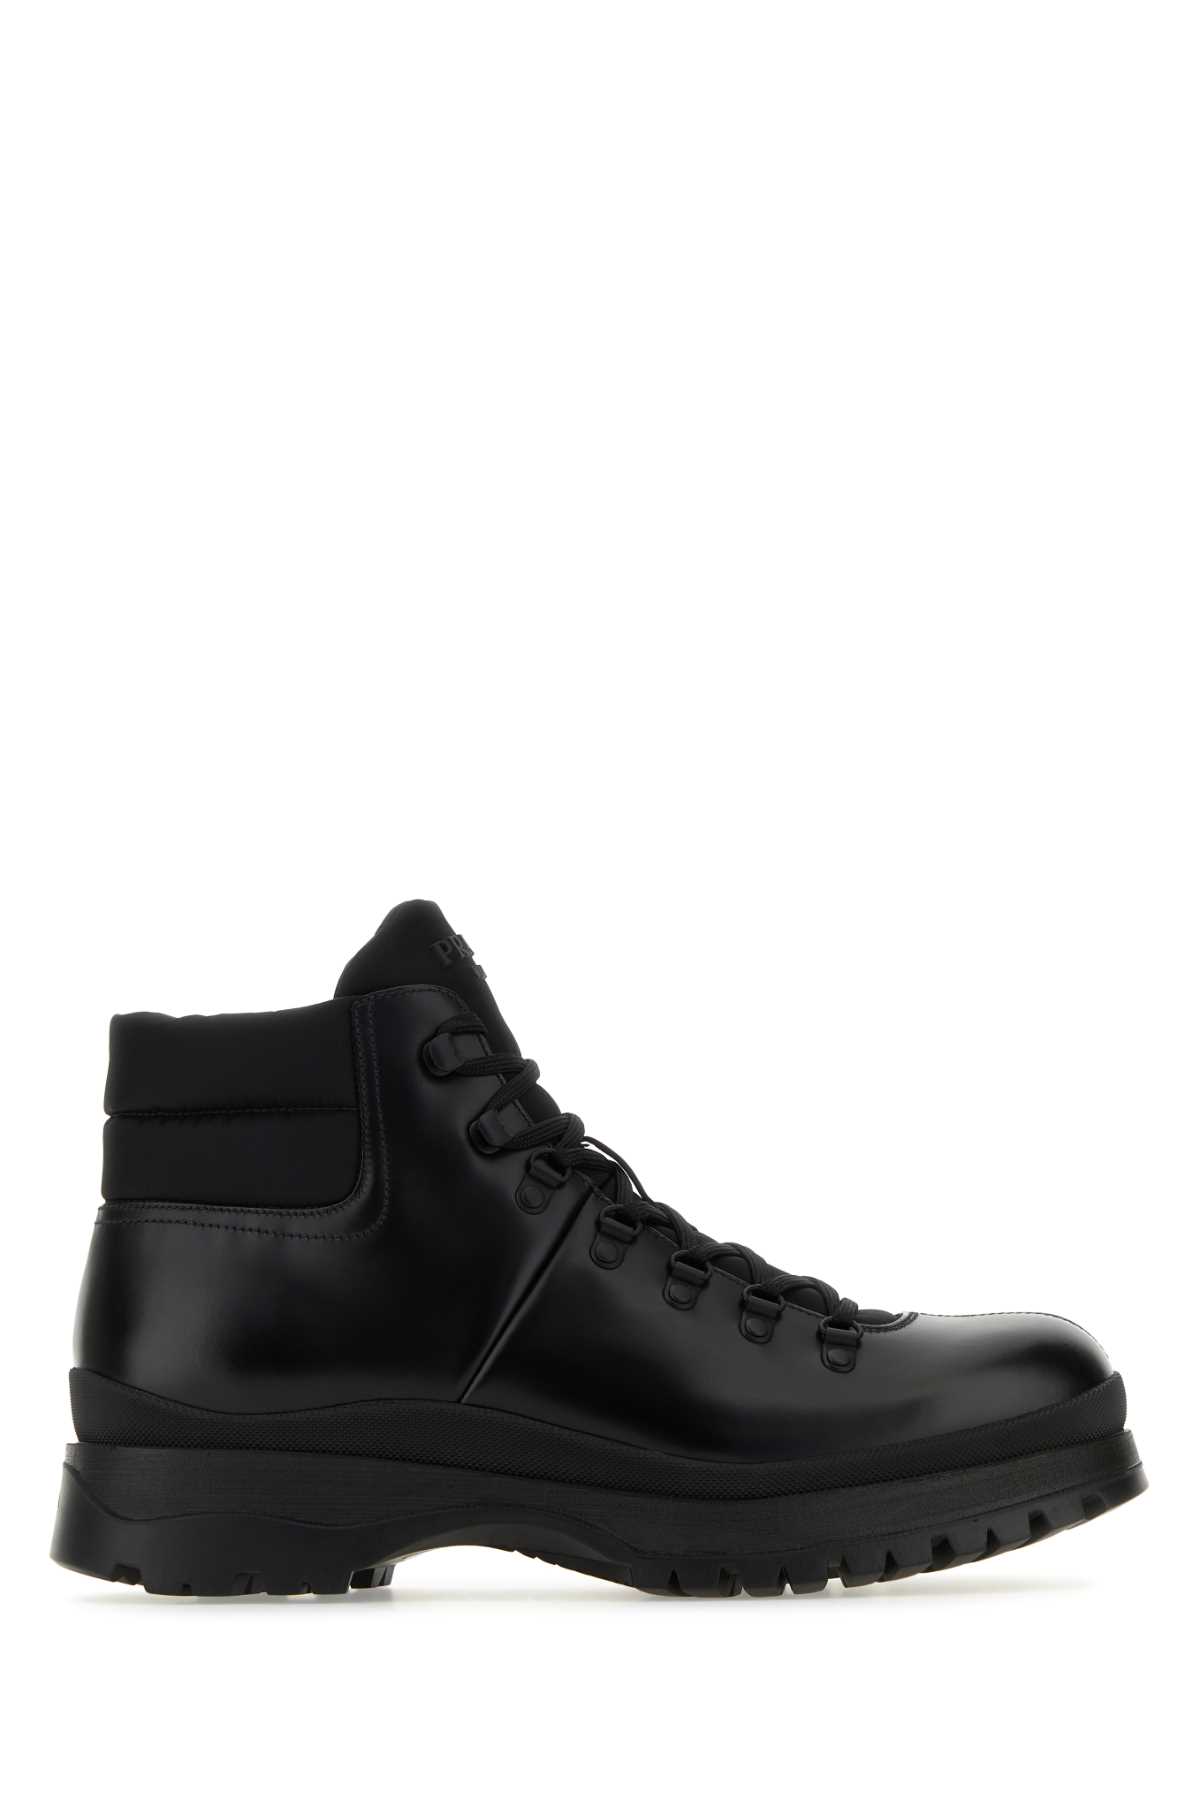 Prada Black Re-nylon And Leather Brixxen Ankle Boots